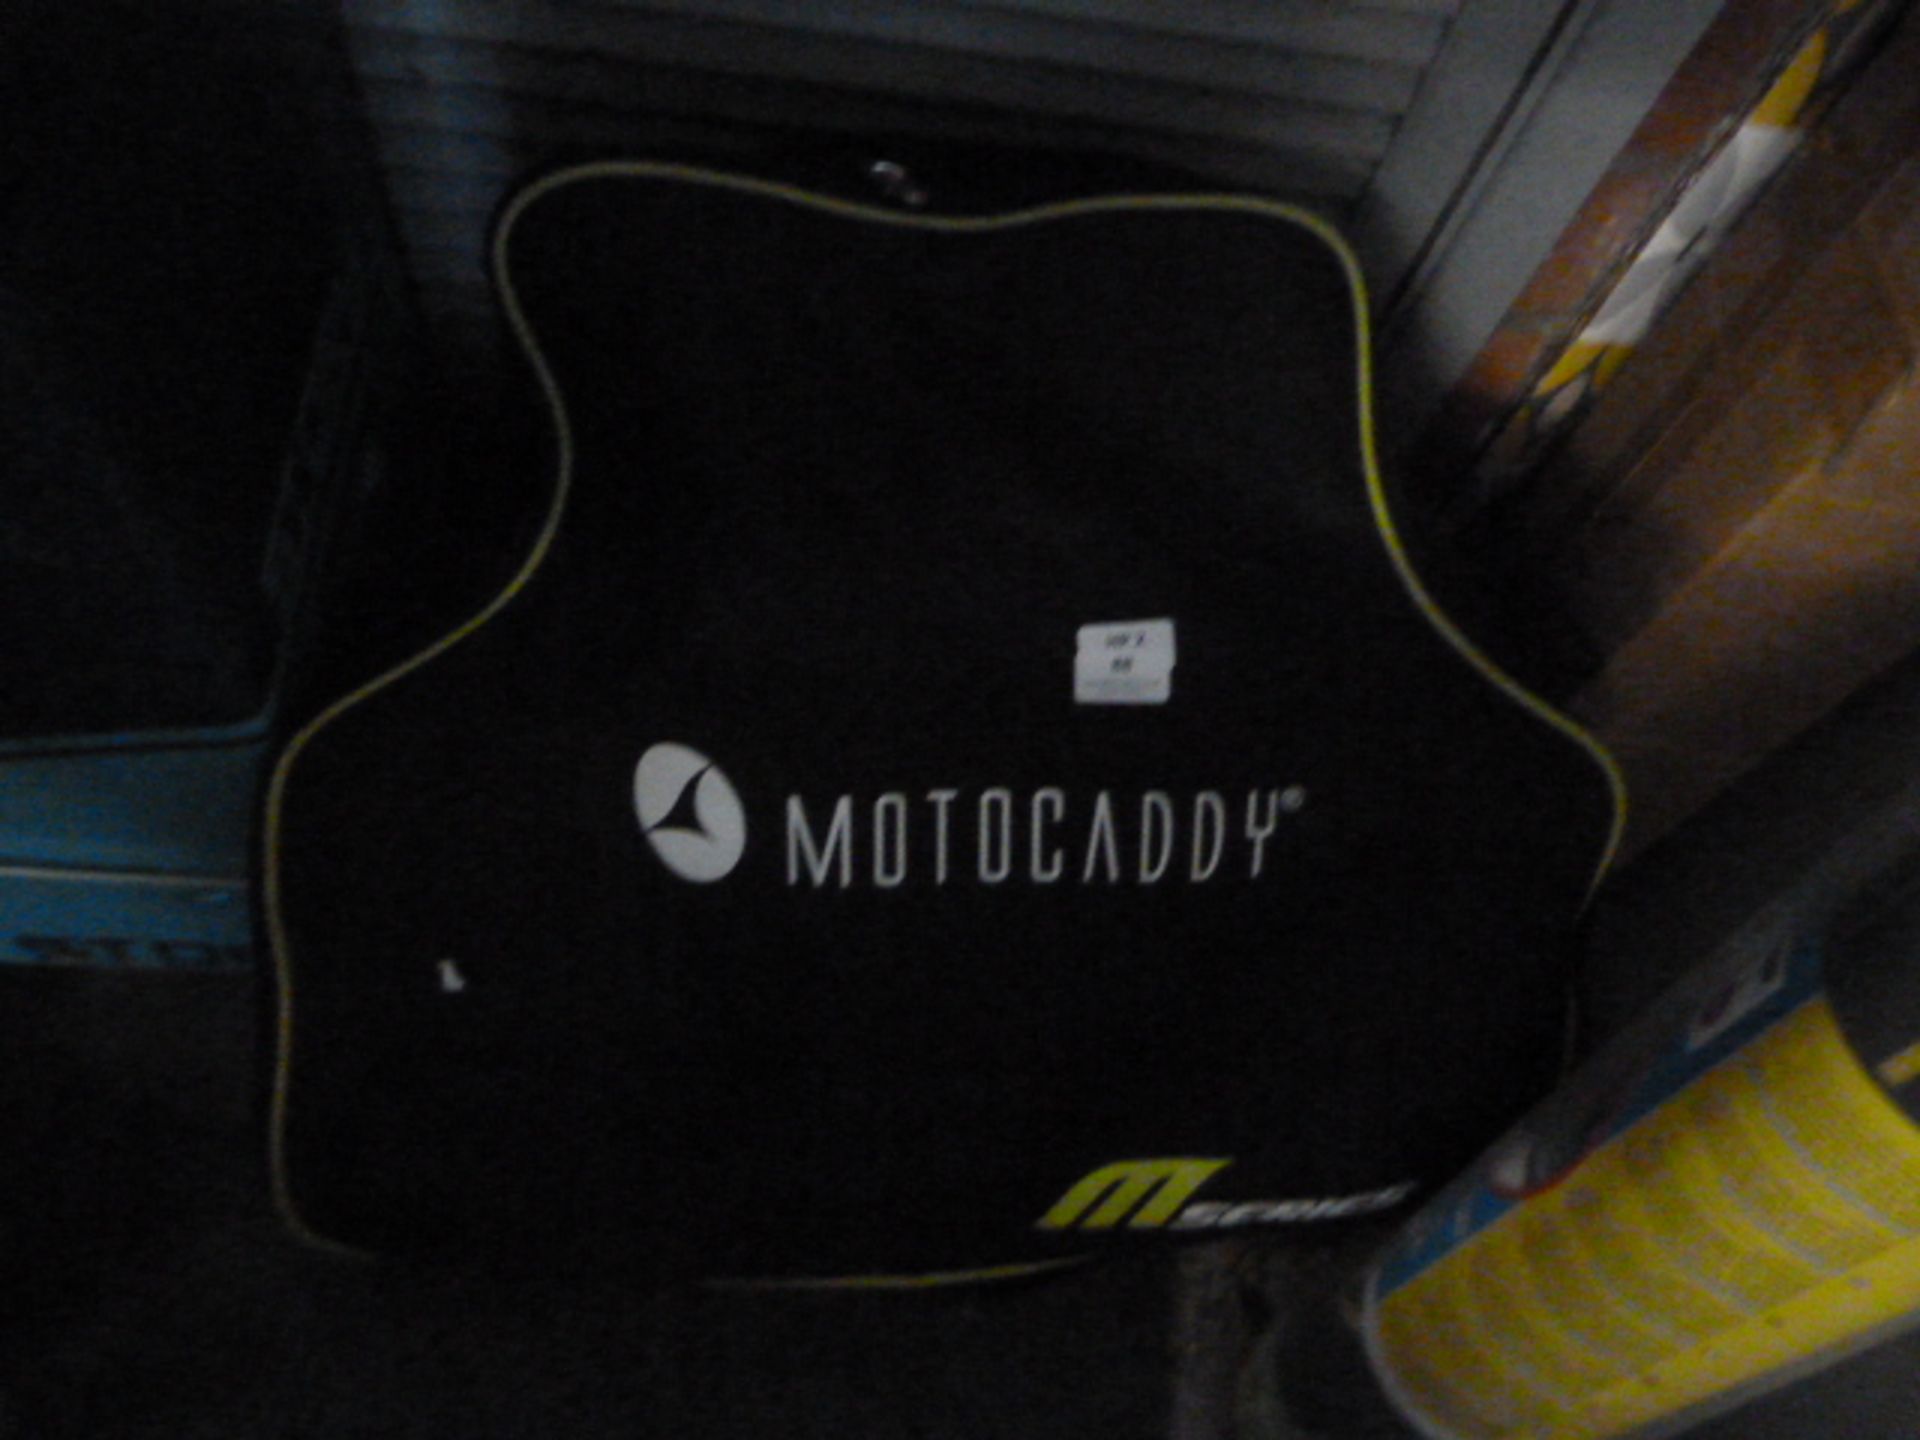 Motocaddy M3 Pro Electric Golf Trolley